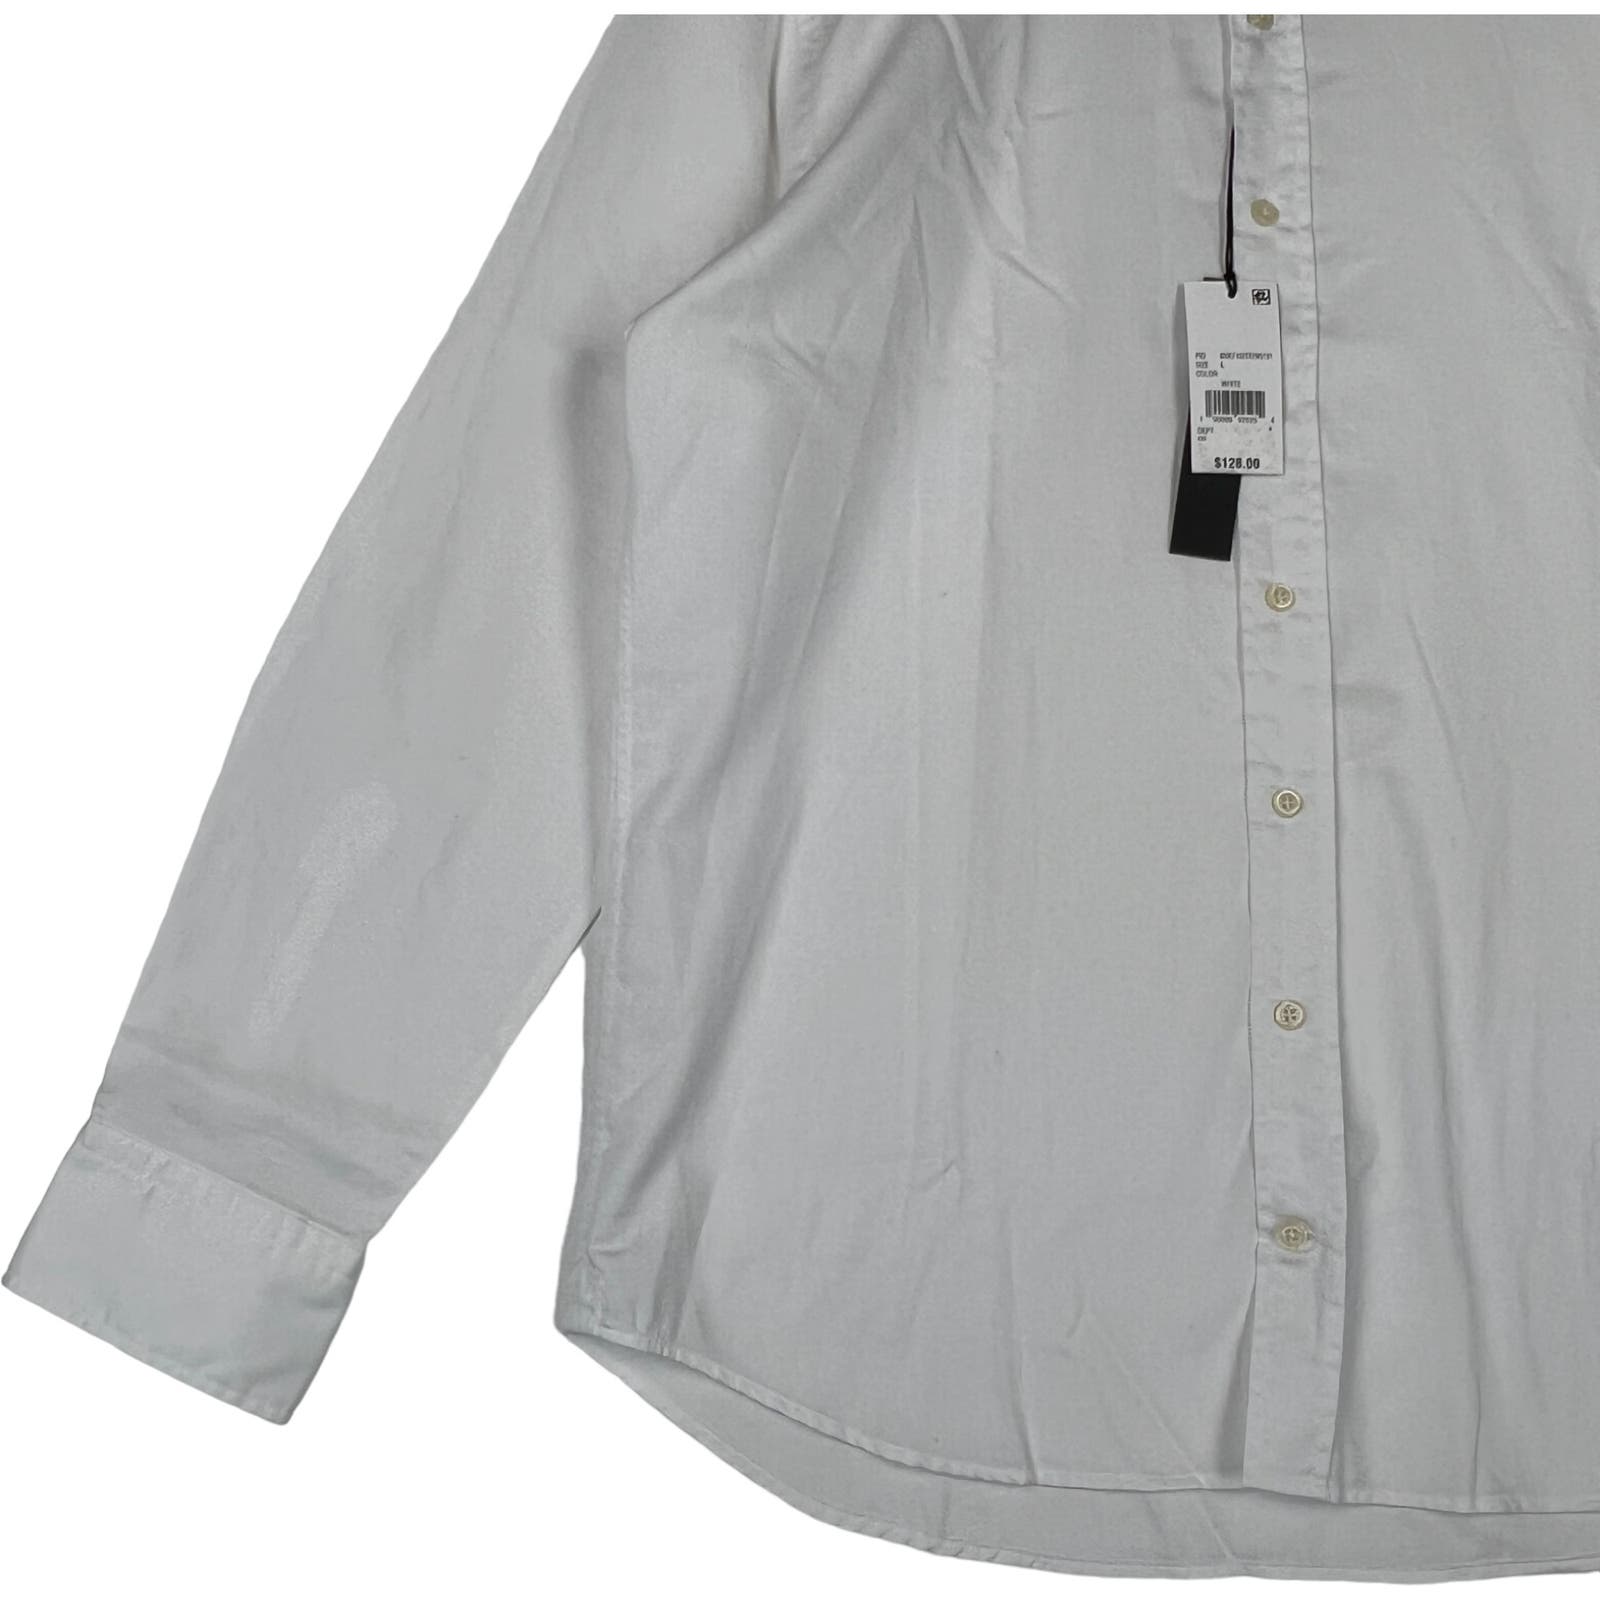 Dylan Gray Men White Cotton Dress US L  Long Sleeve Button-down